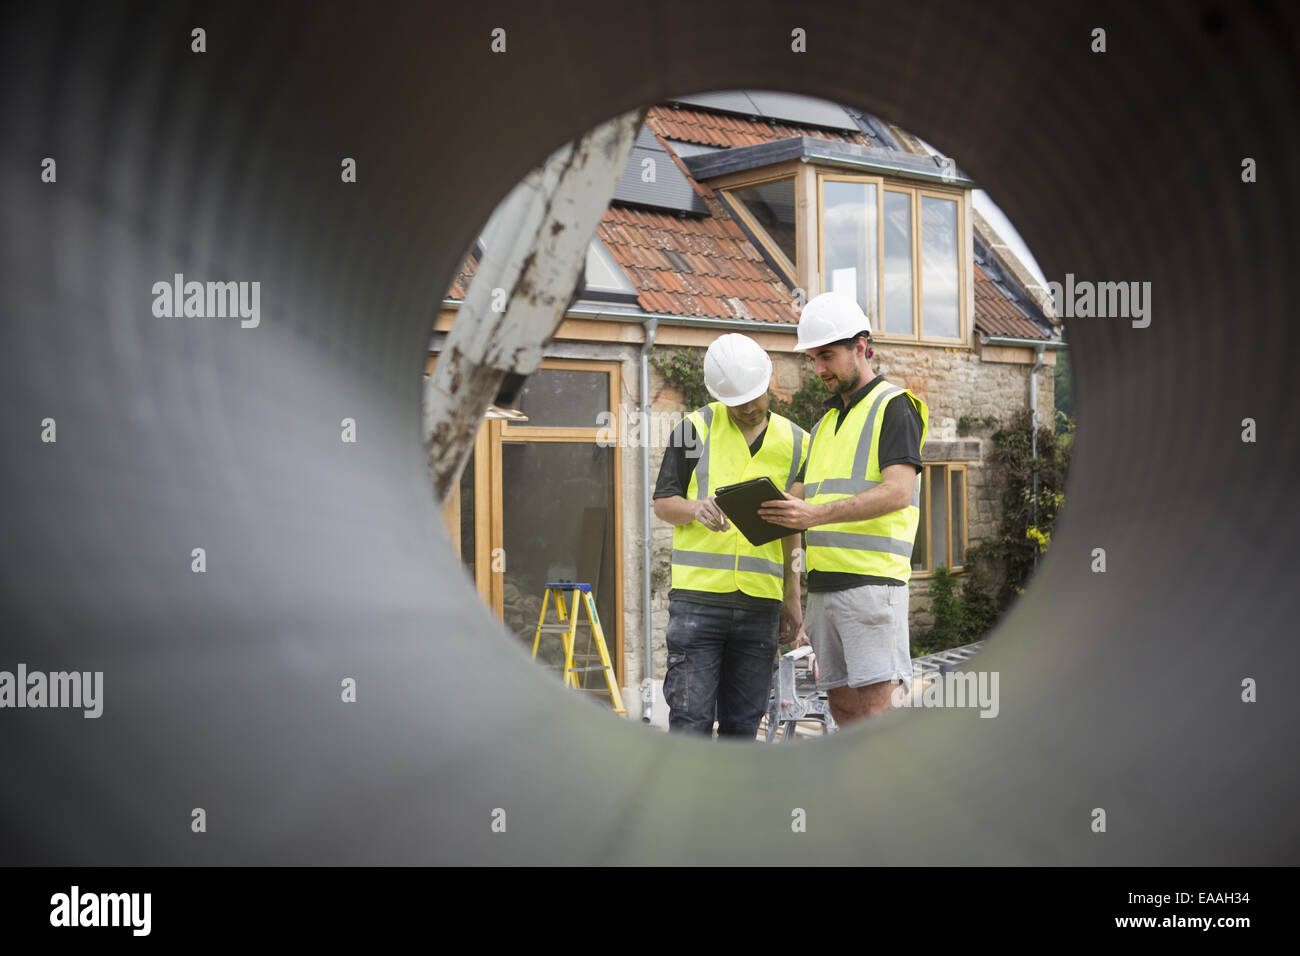 Zwei Bauarbeiter auf einer Baustelle, angezeigt durch ein rundes Rohr. Stockfoto